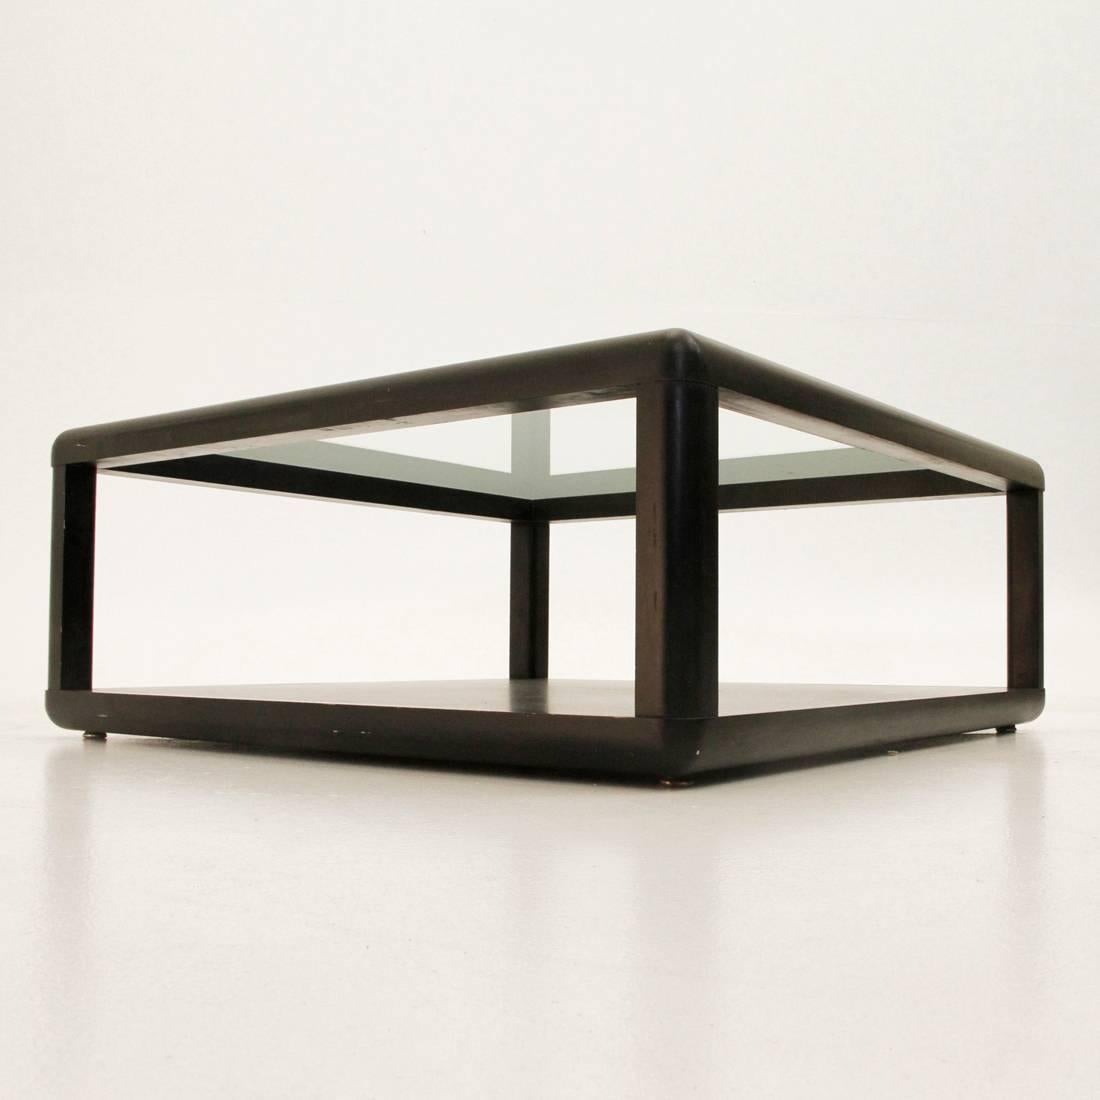 Italian wodden black square Model T114 Coffee Table by Centro Progetti Tecno, 1975